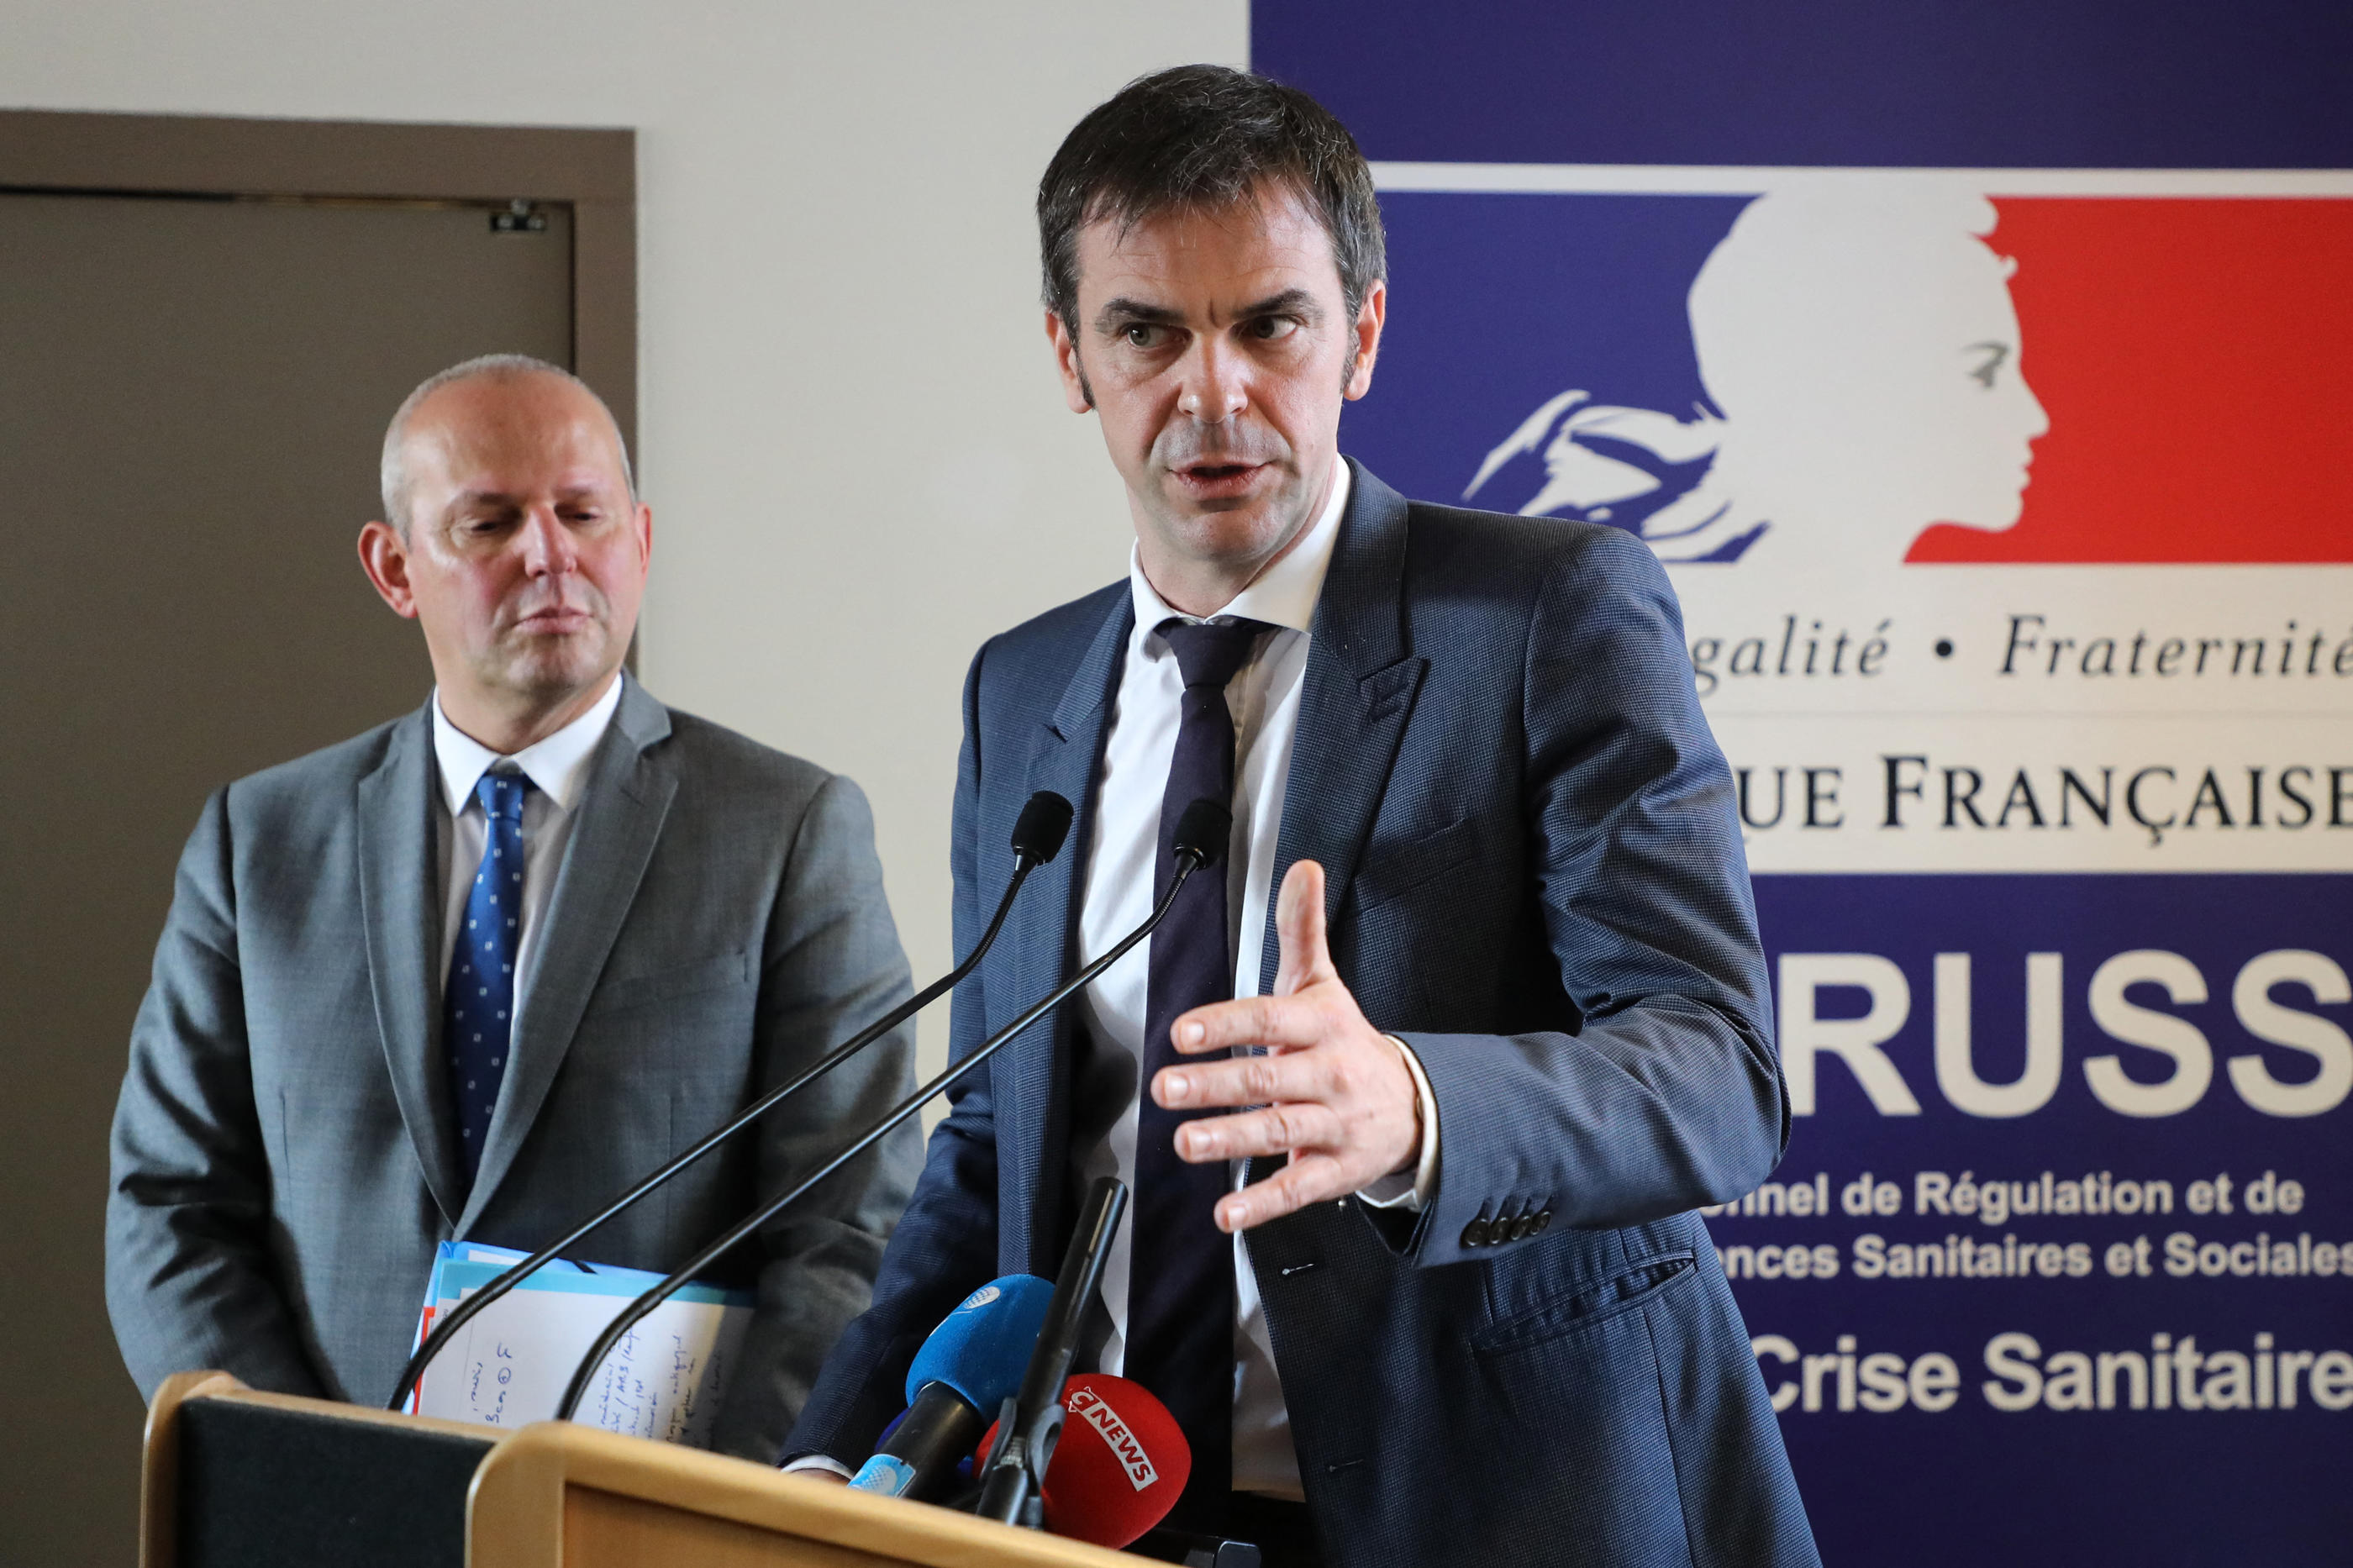 Le directeur général de la santé Jérôme Salomon et l'ex-ministre de la Santé Olivier Véran le 18 février 2020, lors d'une conférence de presse consacrée au coronavirus. AFP/Ludovic Marin